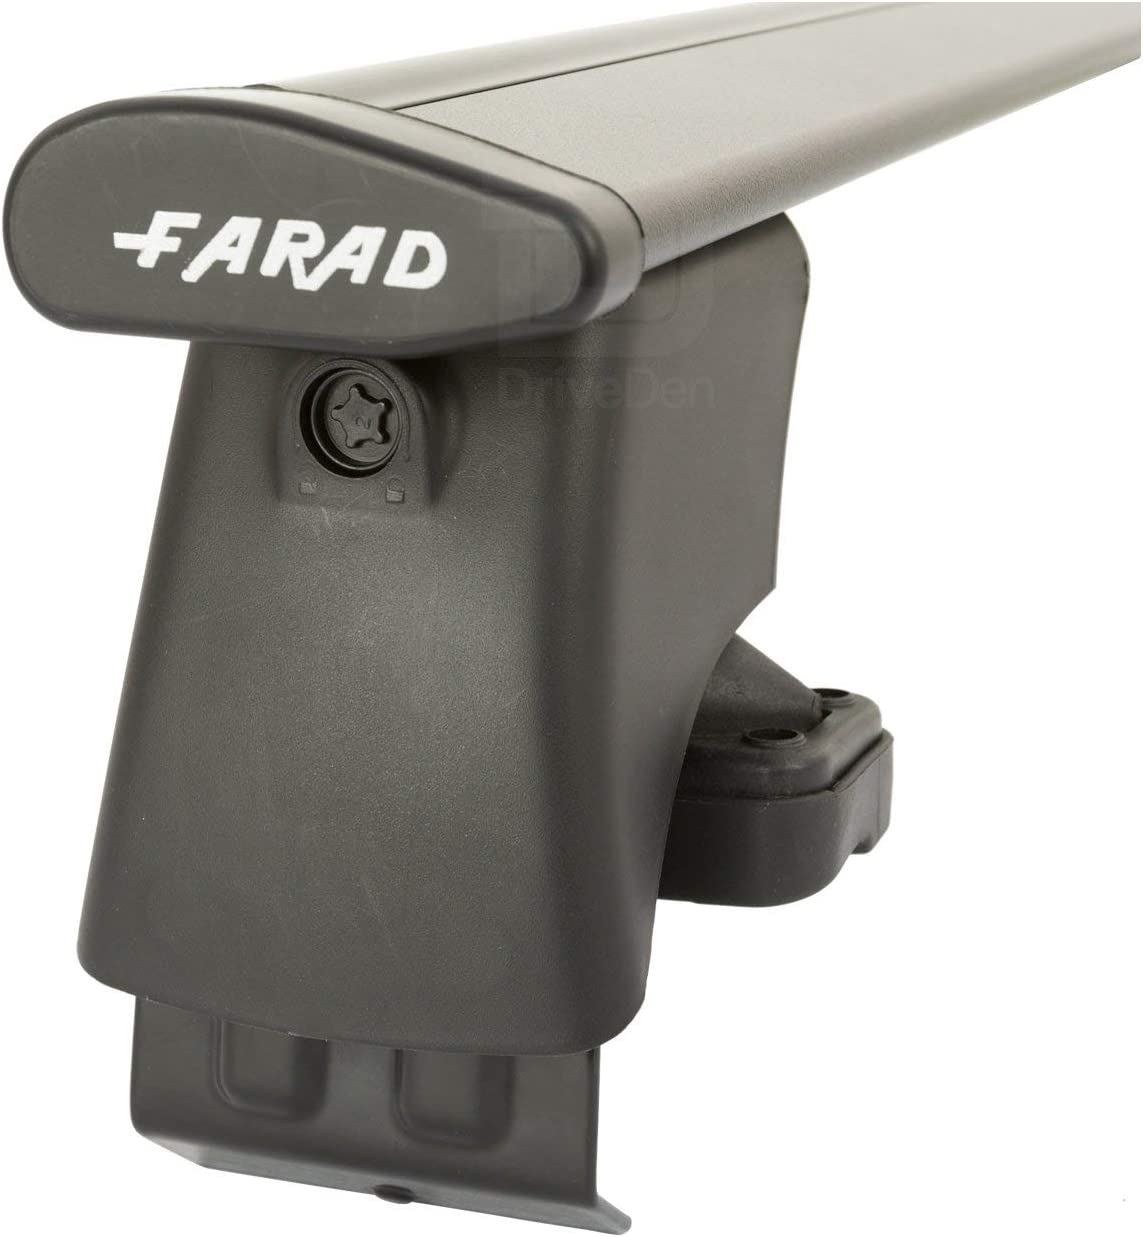 FARAD-Kit H2 per barre portatutto - Seat Toledo 2005-2013 (senza corrimano)